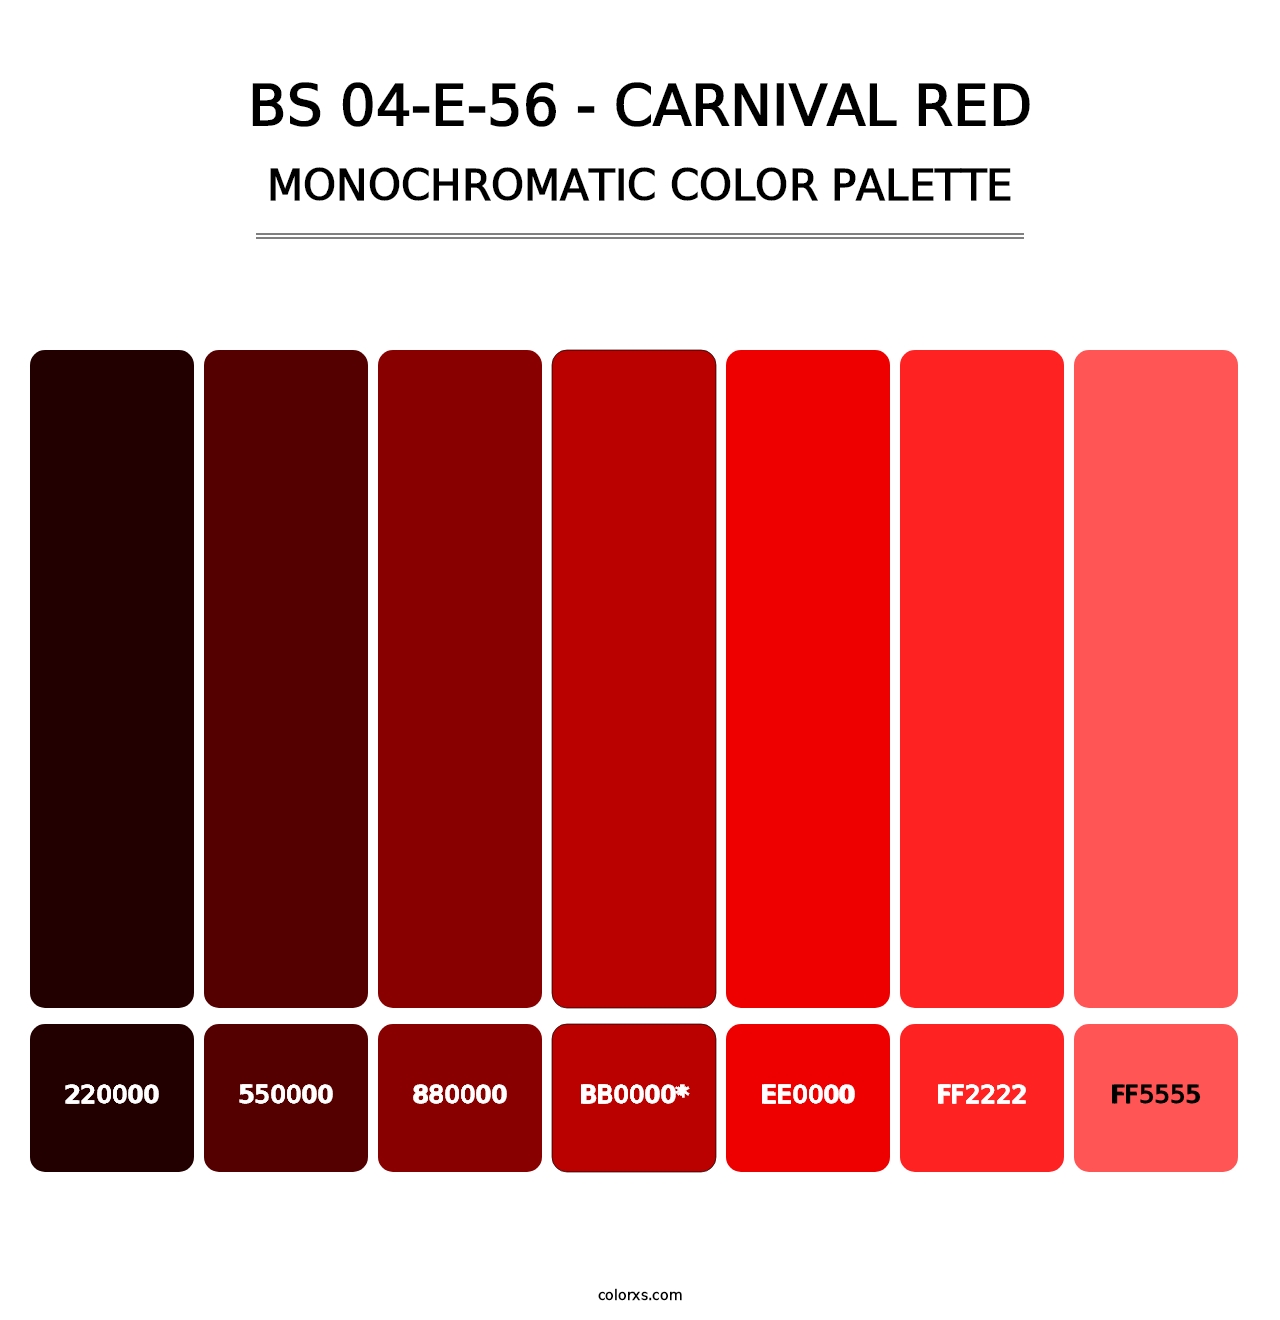 BS 04-E-56 - Carnival Red - Monochromatic Color Palette